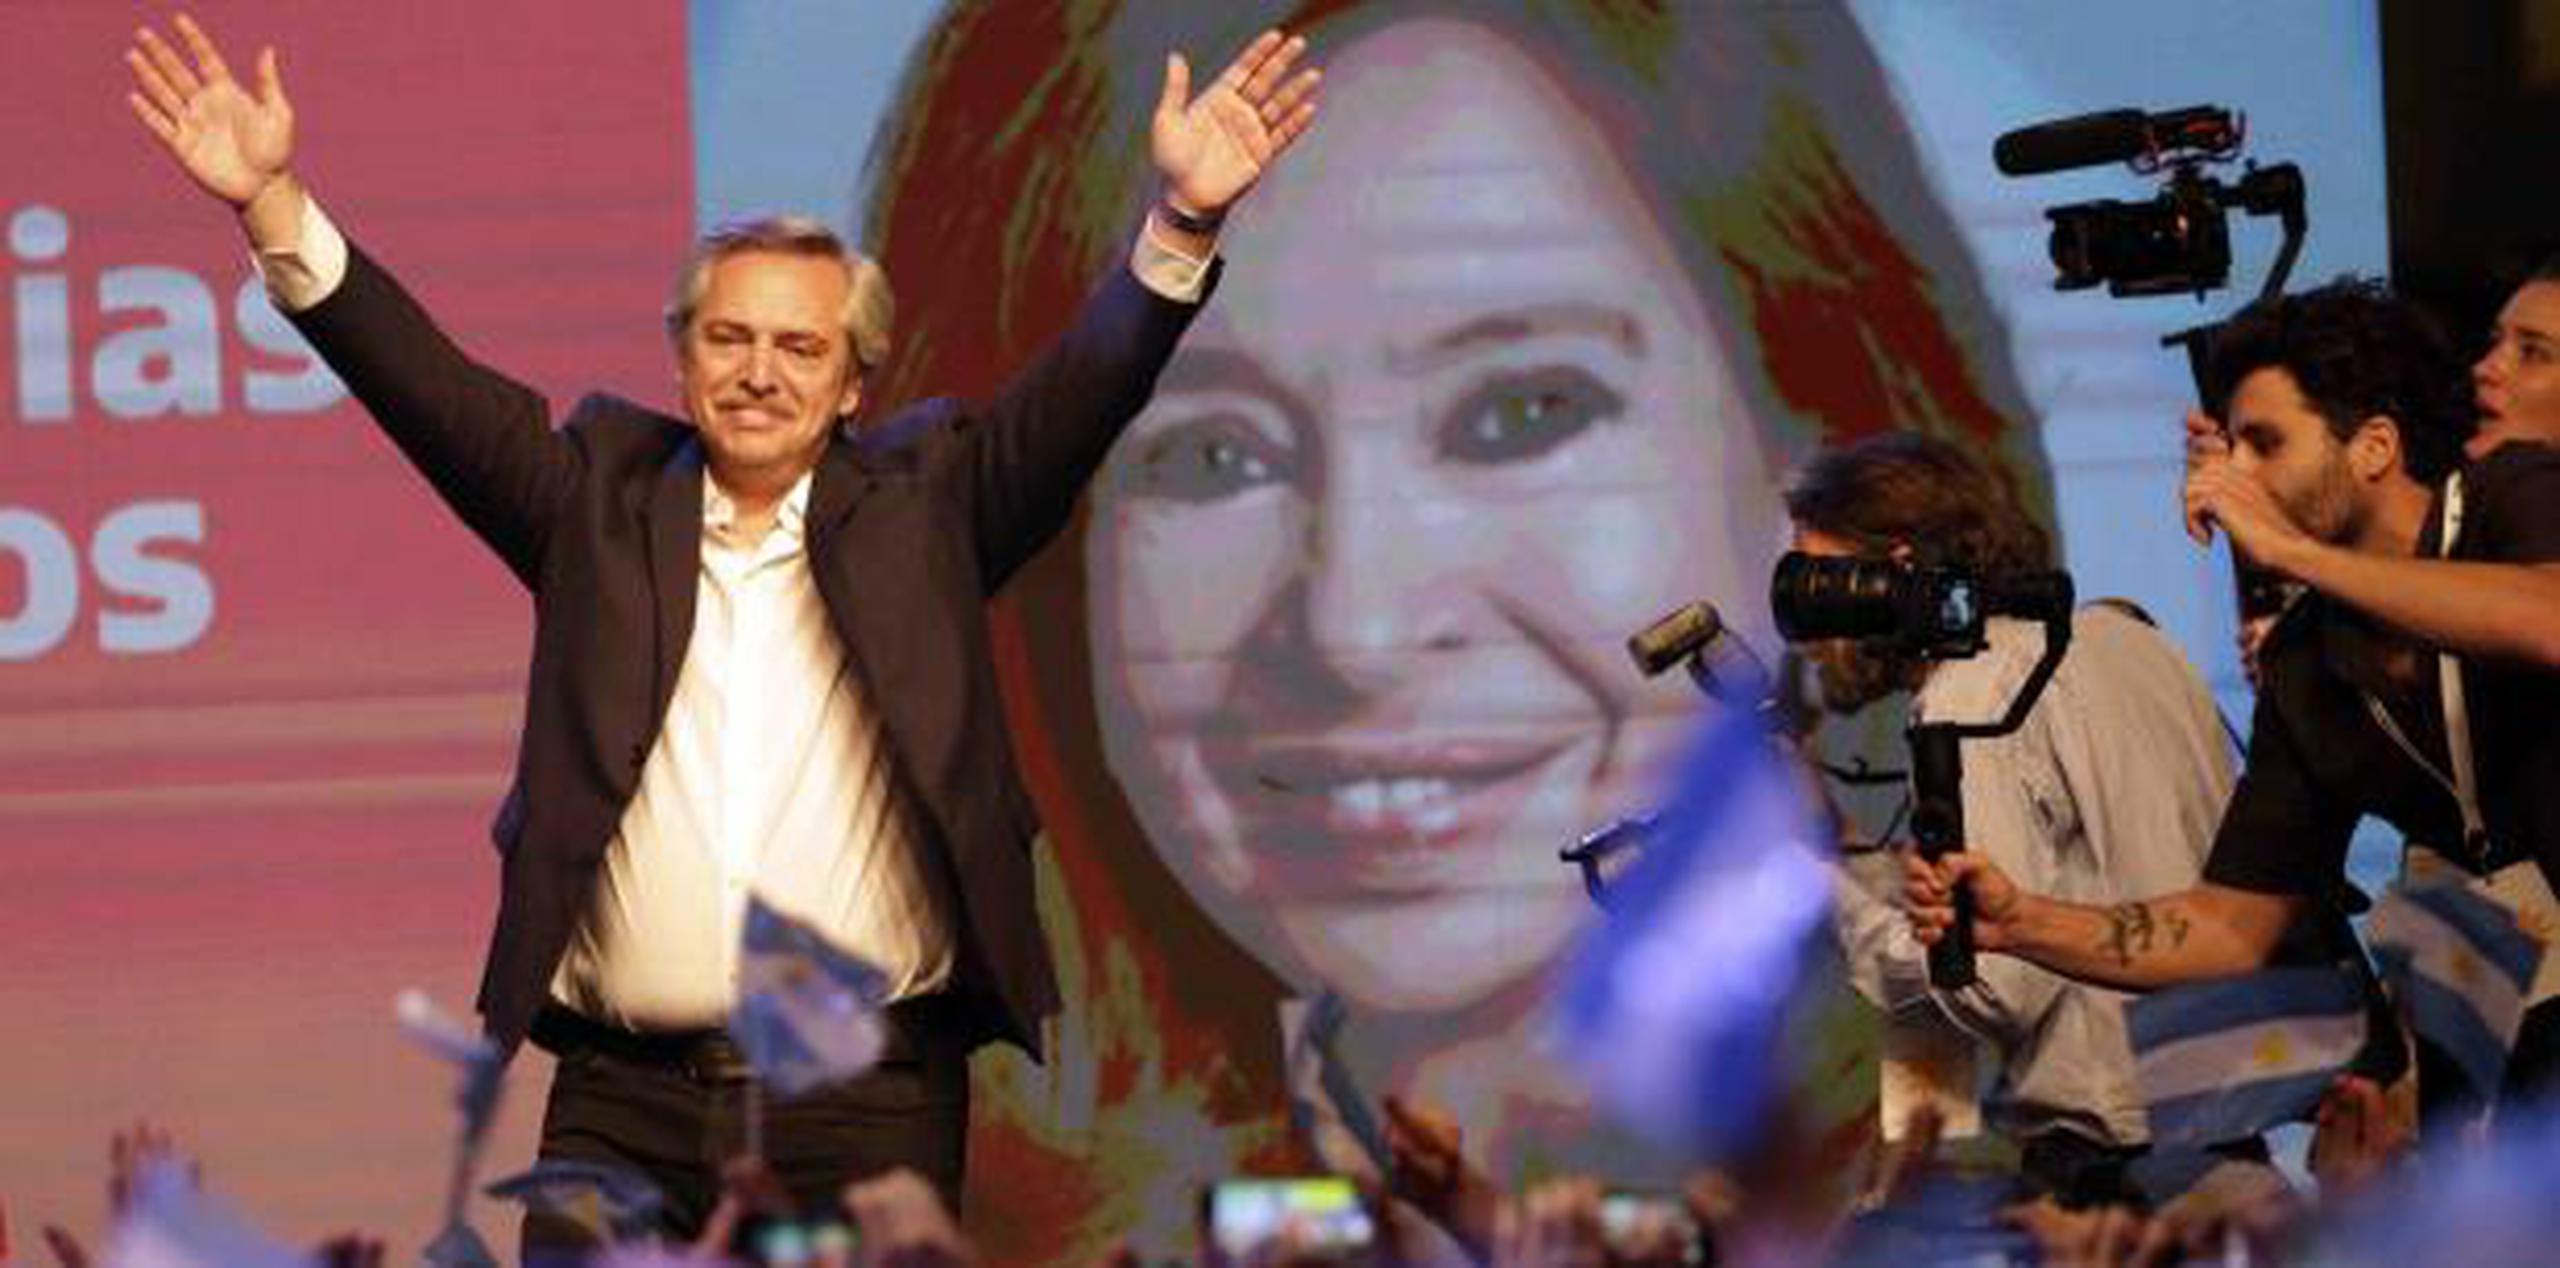 El peronista Alberto Fernández saluda a simpatizantes tras su triunfo electoral junto a una imagen gigante de su compañera de fórmula, la controversial expresidenta Cristina Fernández. (AP)